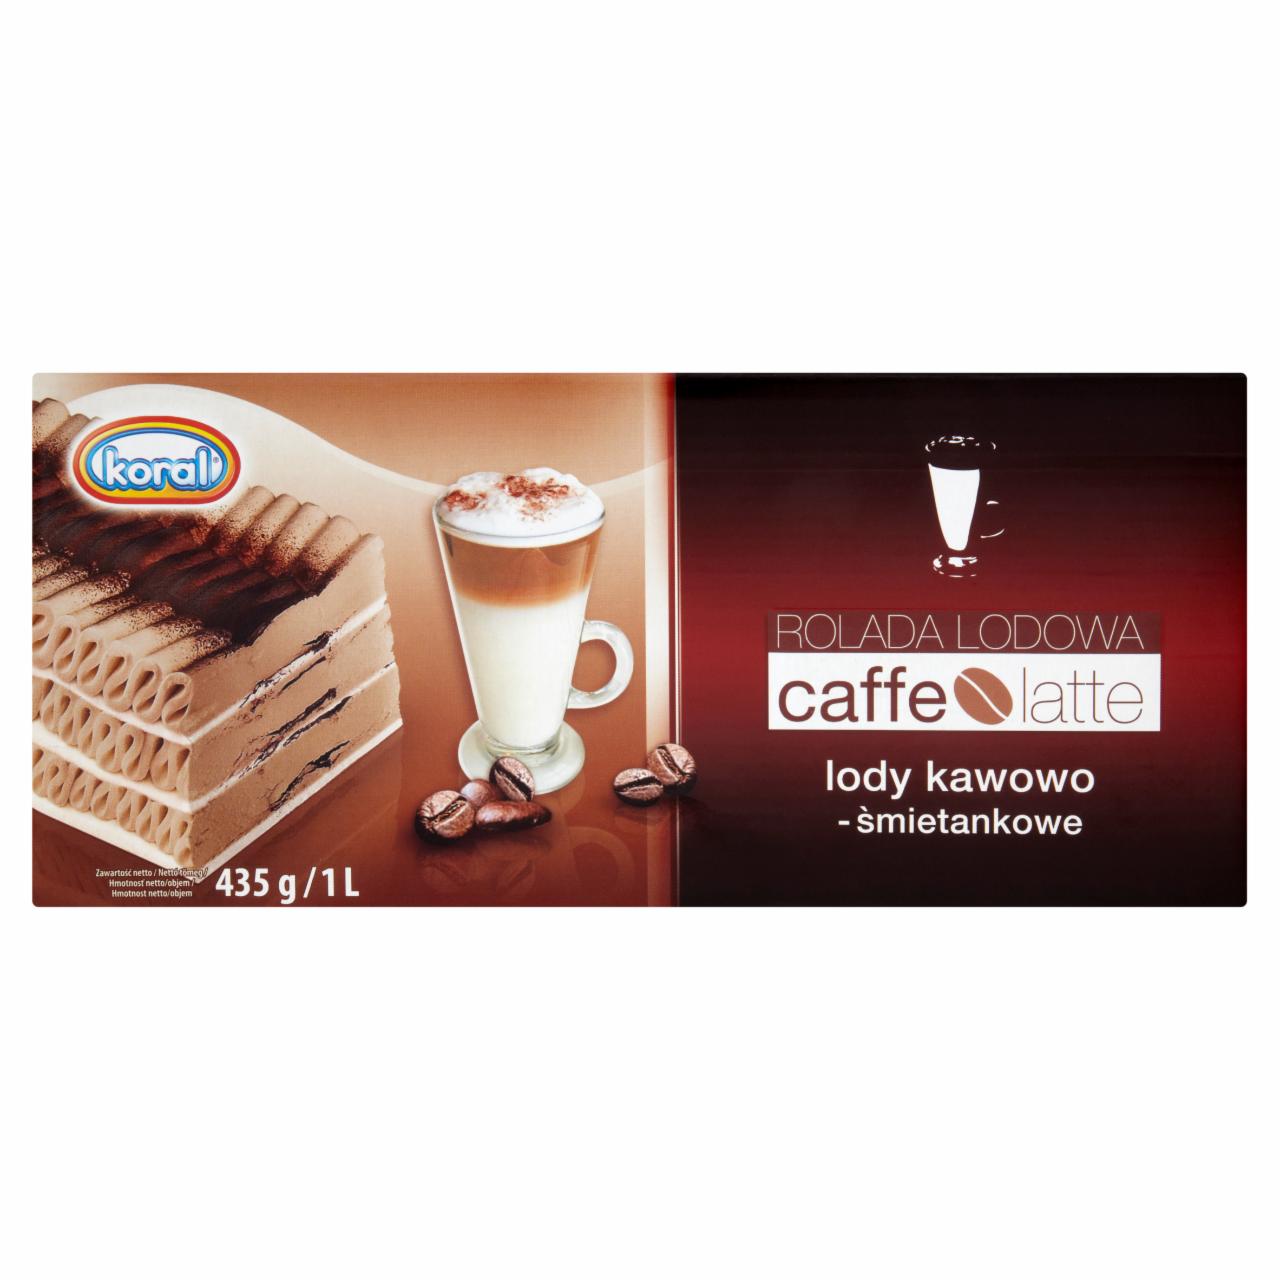 Zdjęcia - Koral Rolada caffe latte Lody kawowo-śmietankowe 1 l